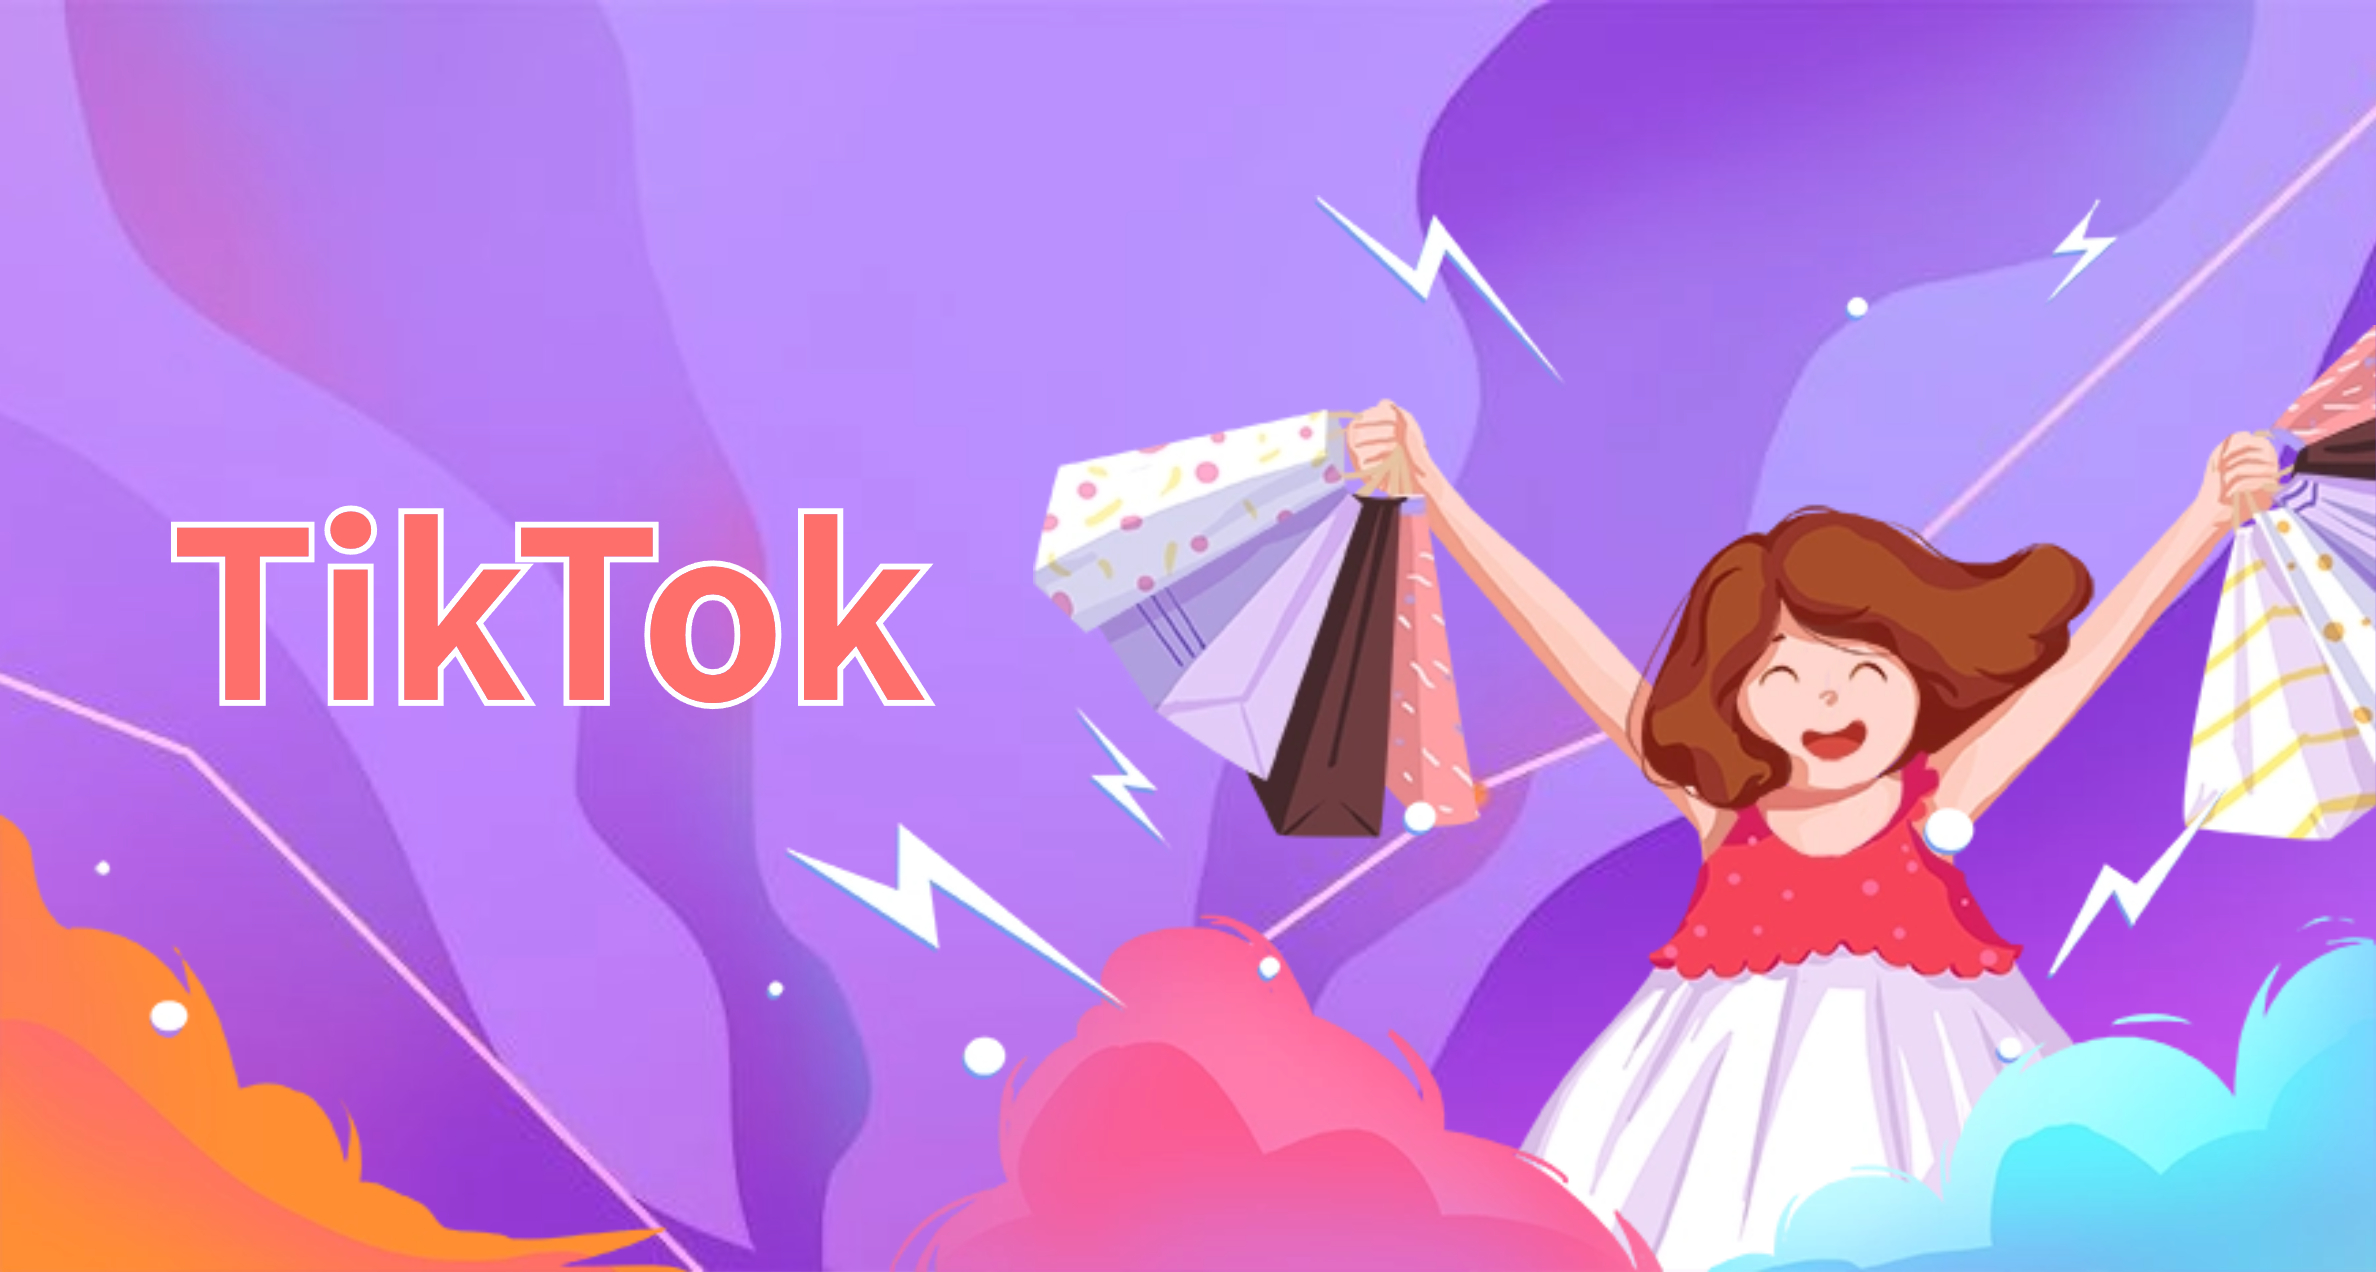 TikTok平台选品运营指导（一）！